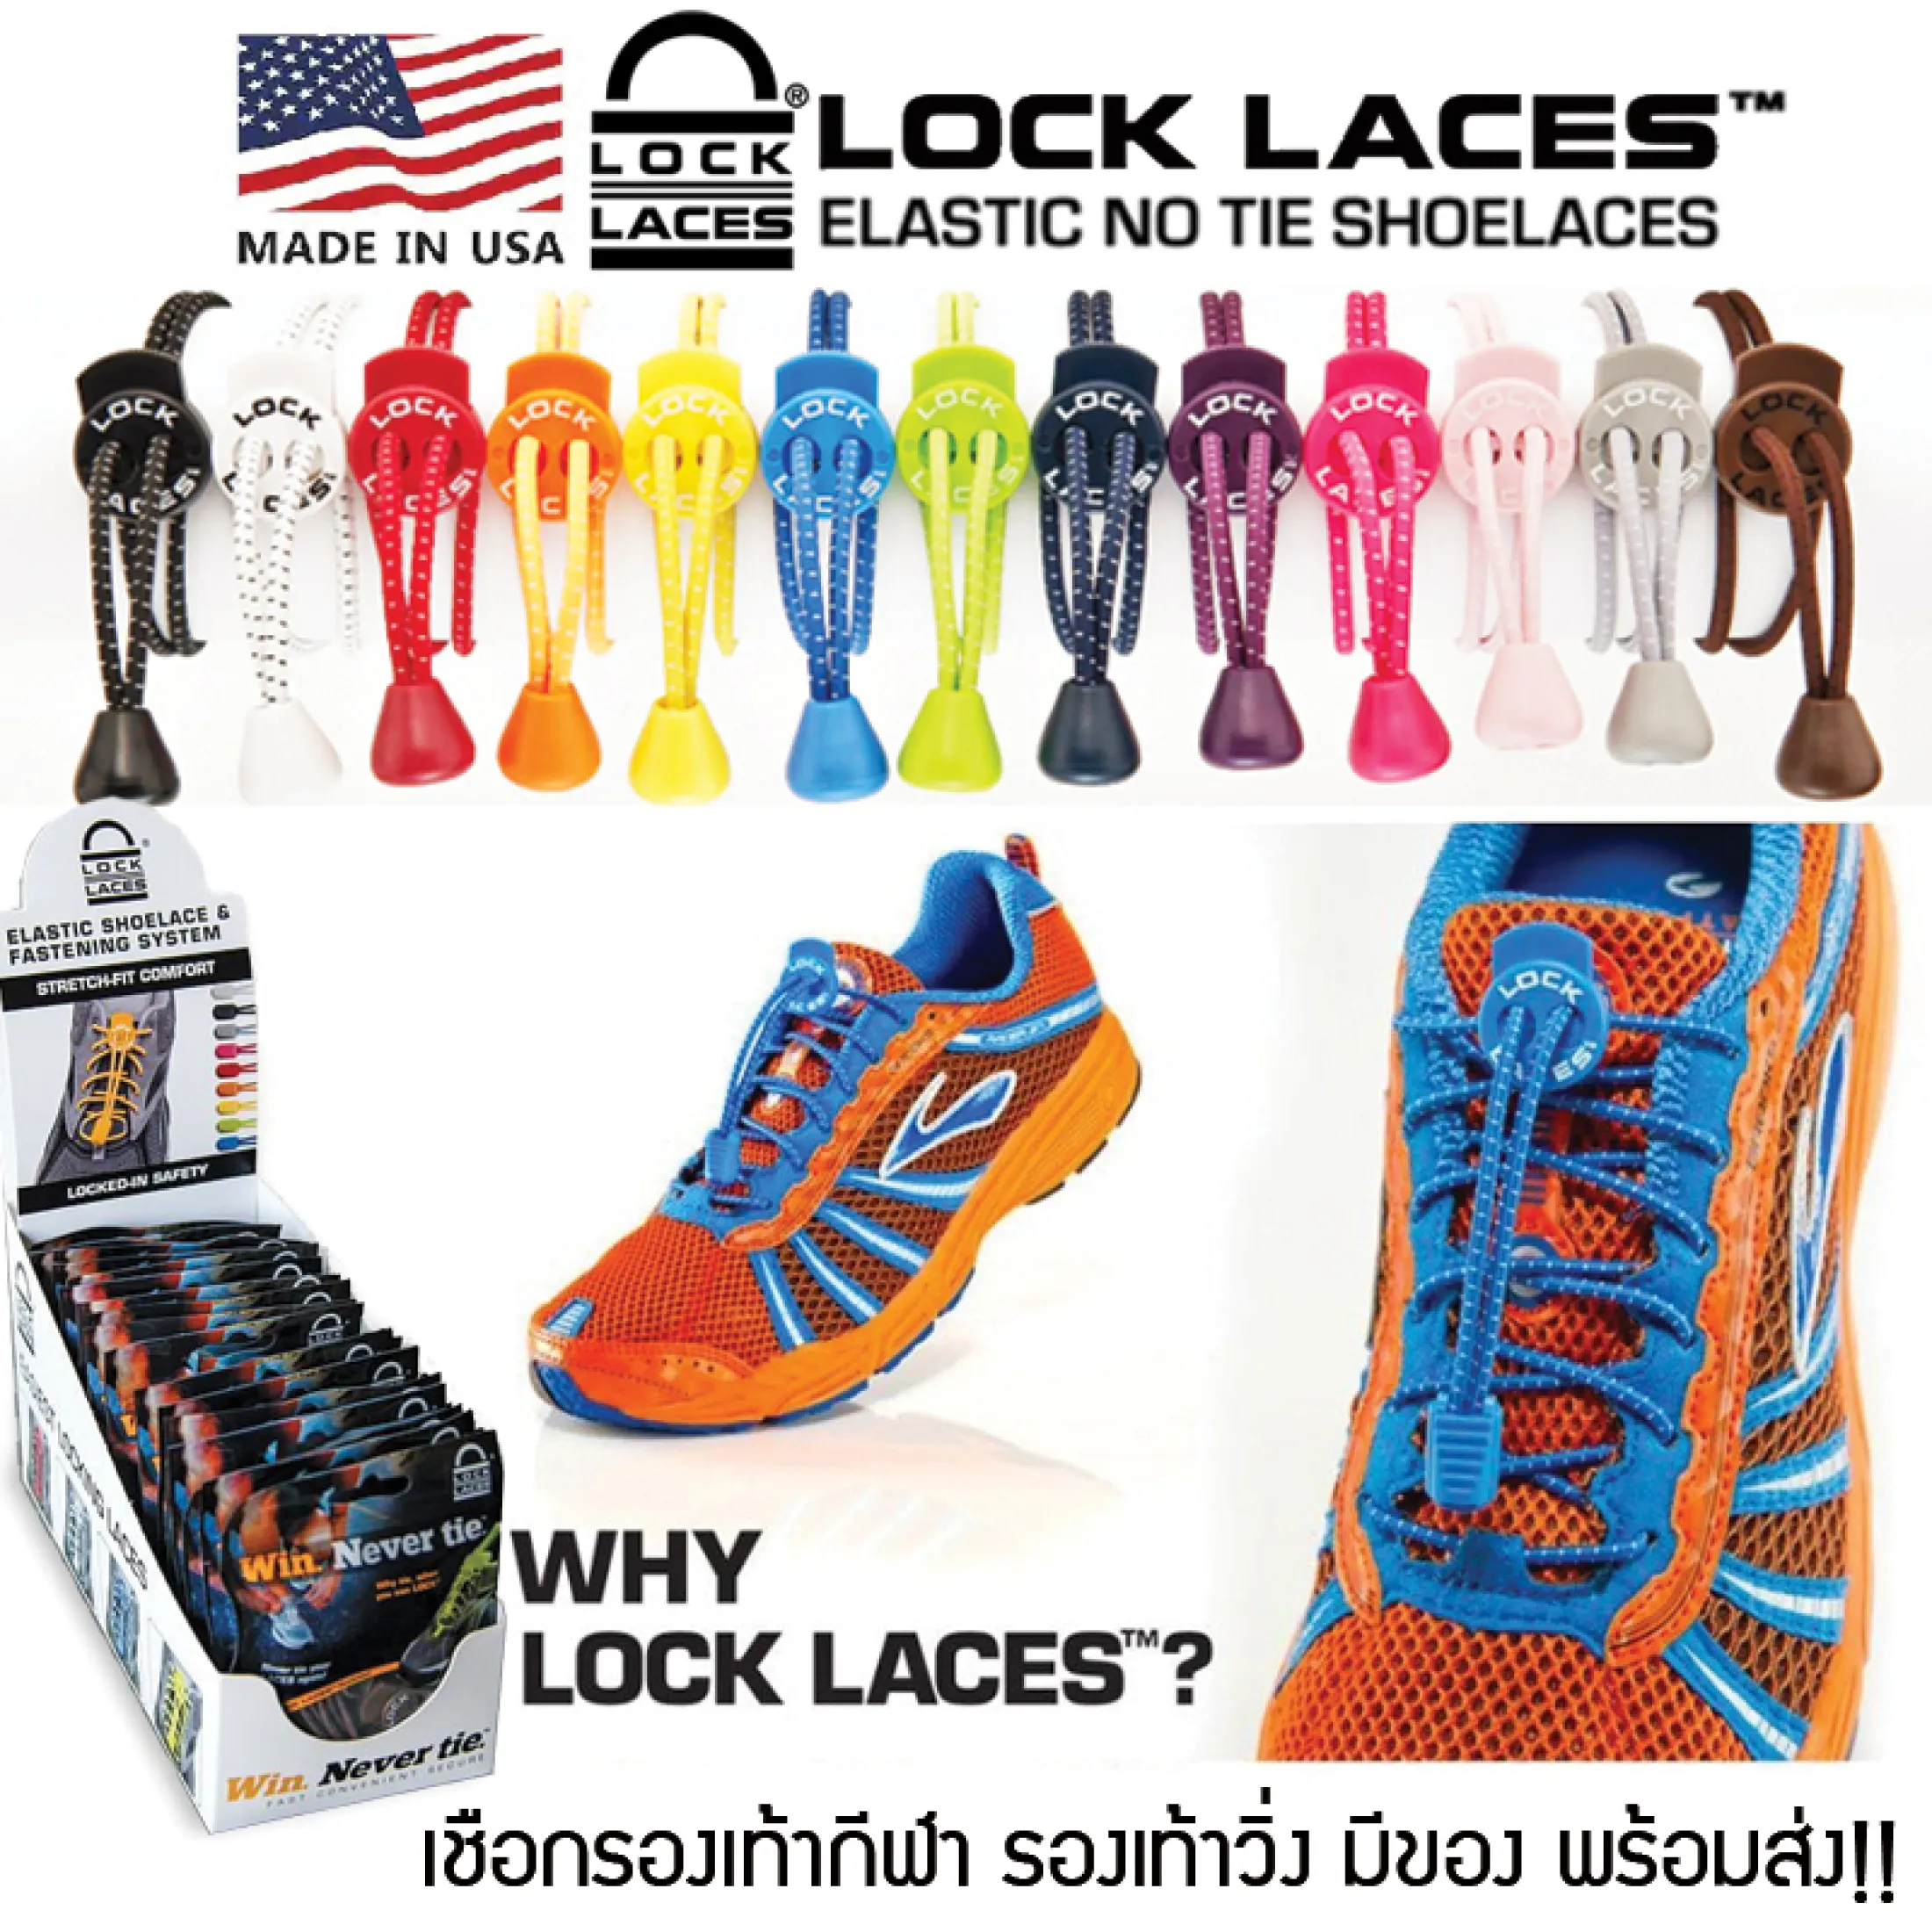 เกี่ยวกับสินค้า LOCKLACES USA เชือกรองเท้าไม่ต้องผูก 13 สี!! ป้องกันการสะดุด เชือกรองเท้าวิ่ง-กีฬา ล็อคแน่นไม่หลุด ไม่ต้องมัดเชือก 1 คู่